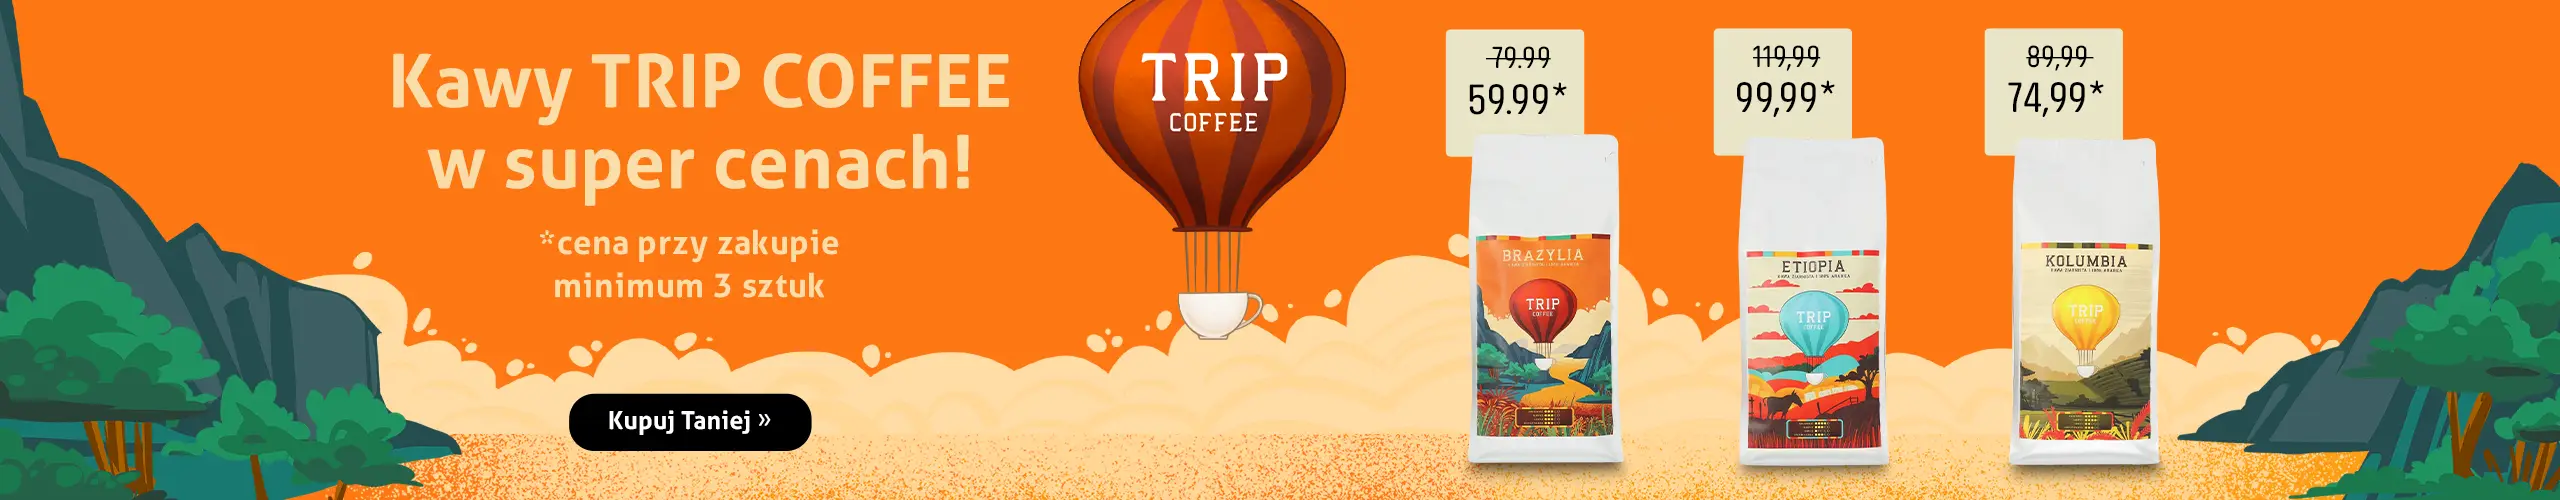 Kawy Trip Coffee w super cenach